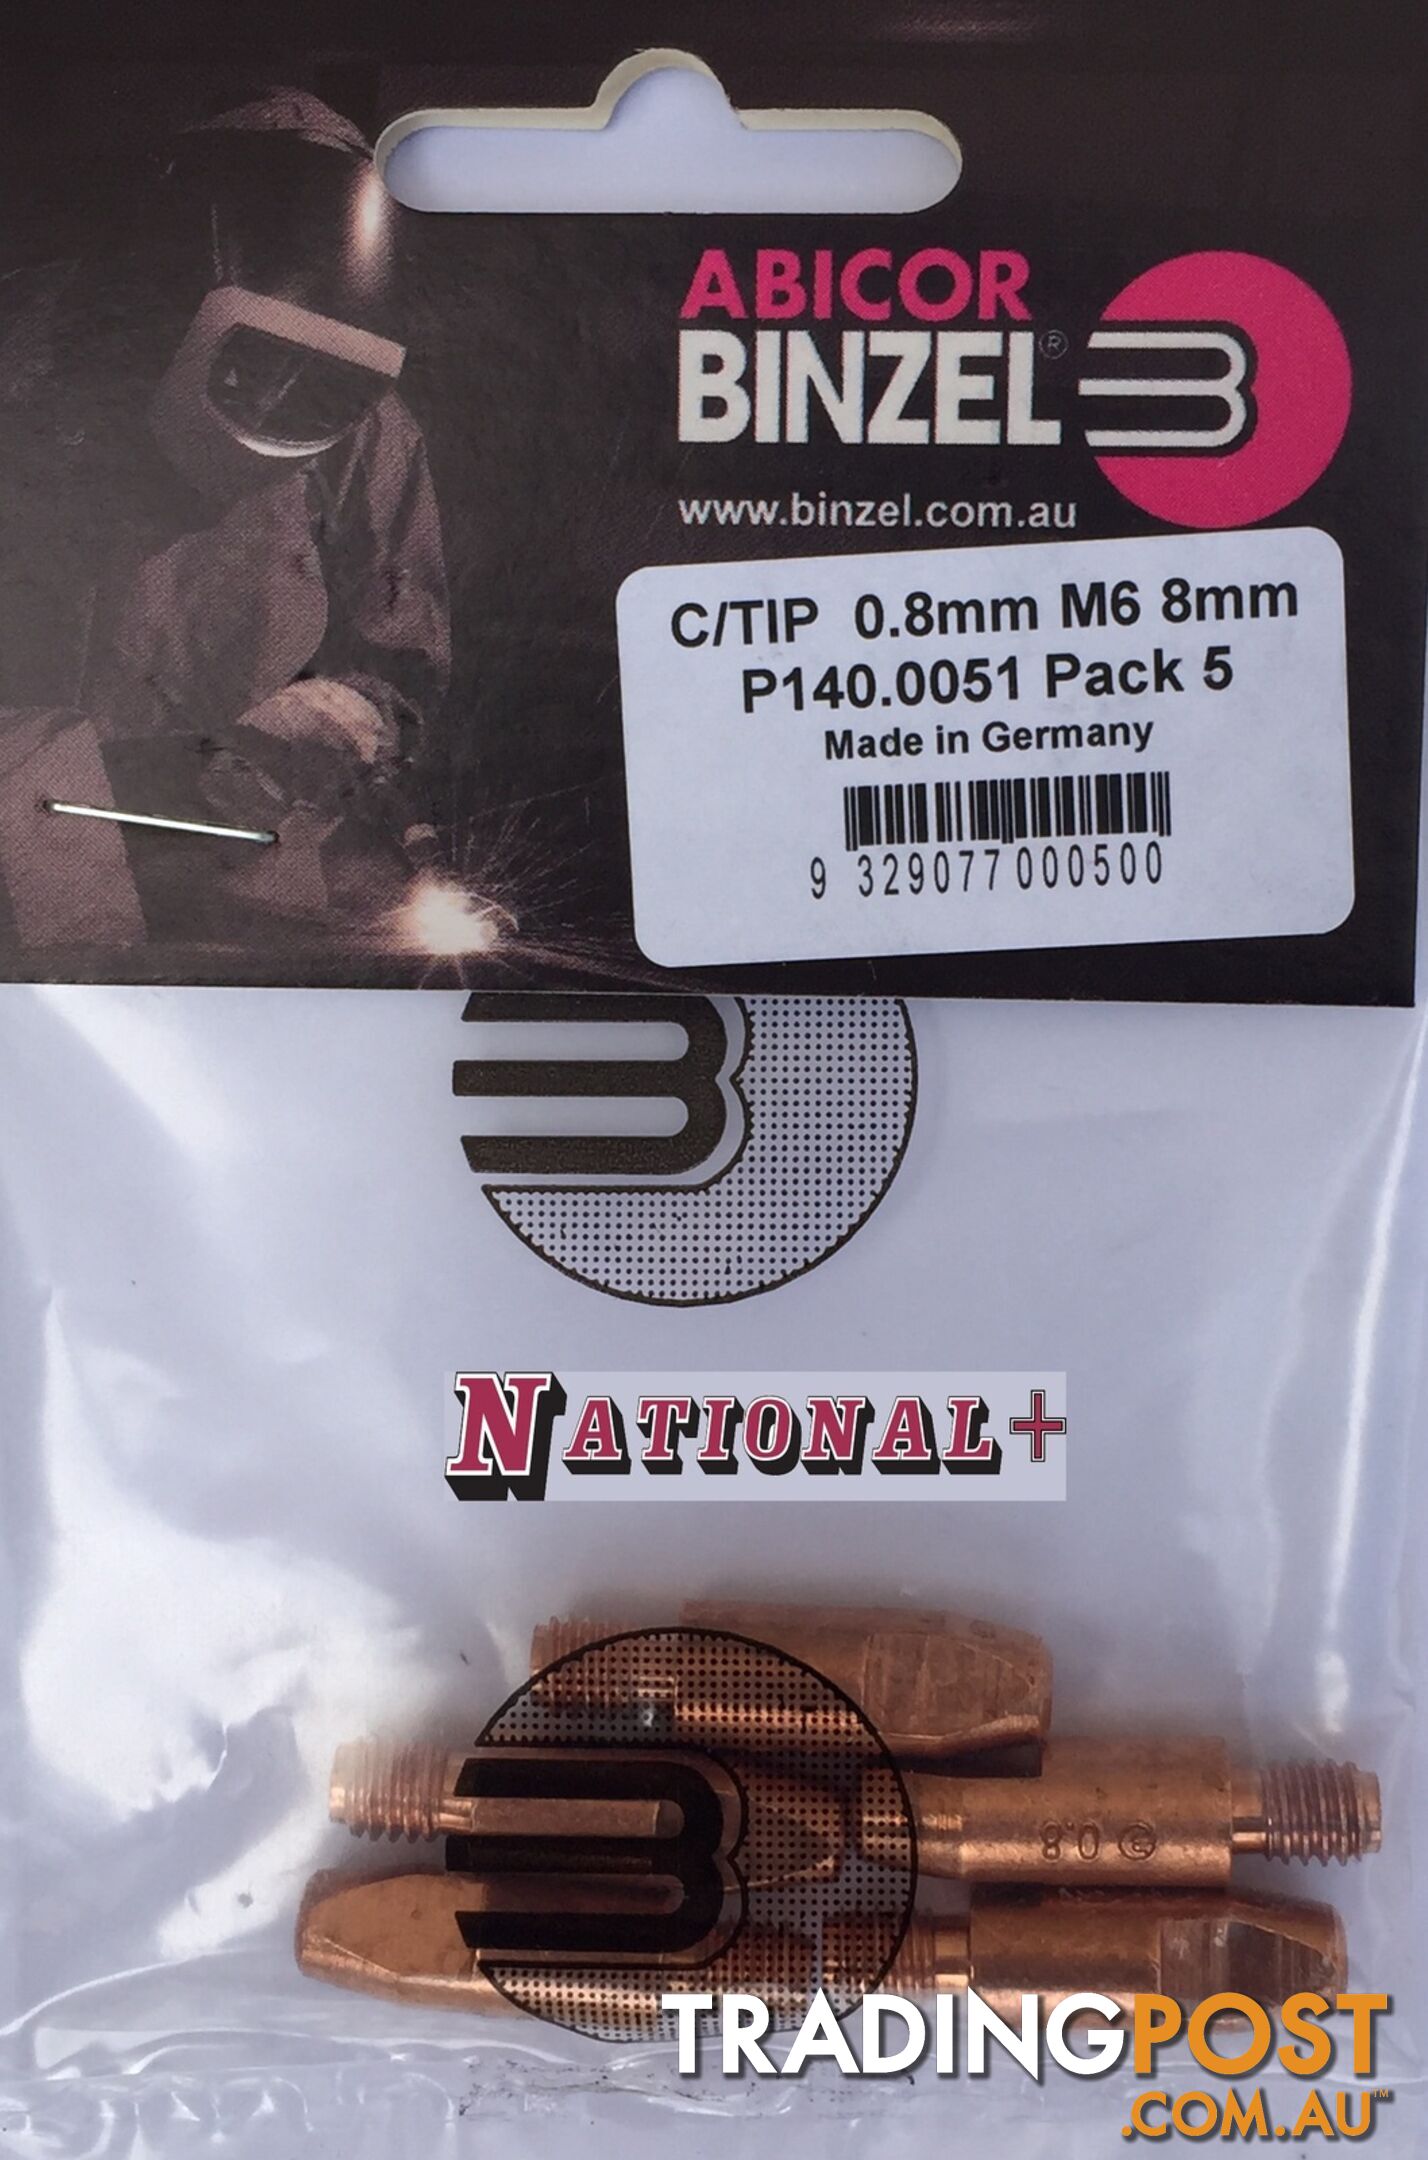 0.6mm Steel M6 8mm 28mm Binzel contact tip Pk: 10 P140.0005